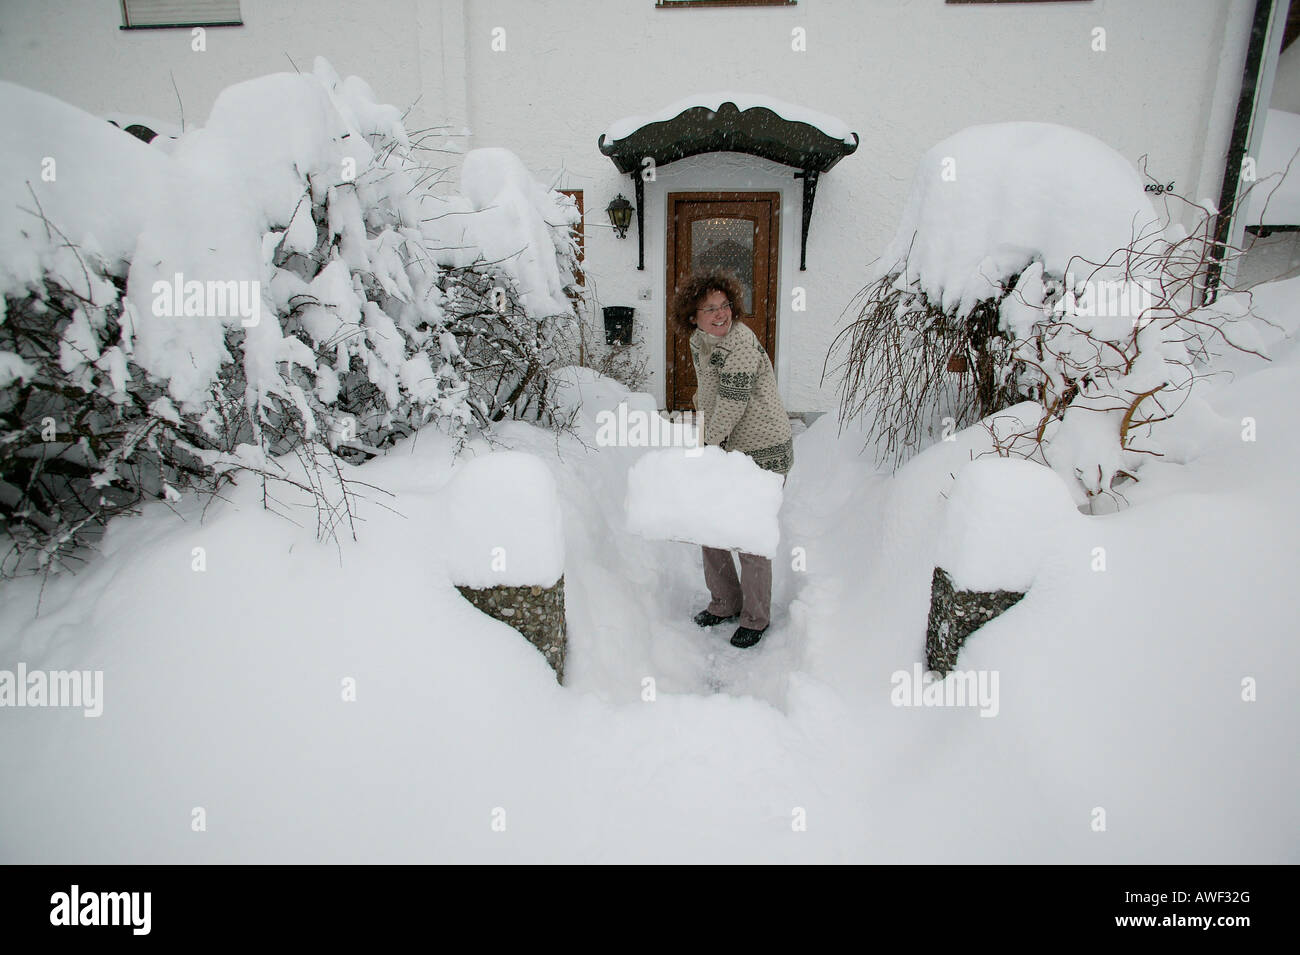 Femme de pelleter de la neige, de Haute-bavière, Bavaria, Germany, Europe Banque D'Images